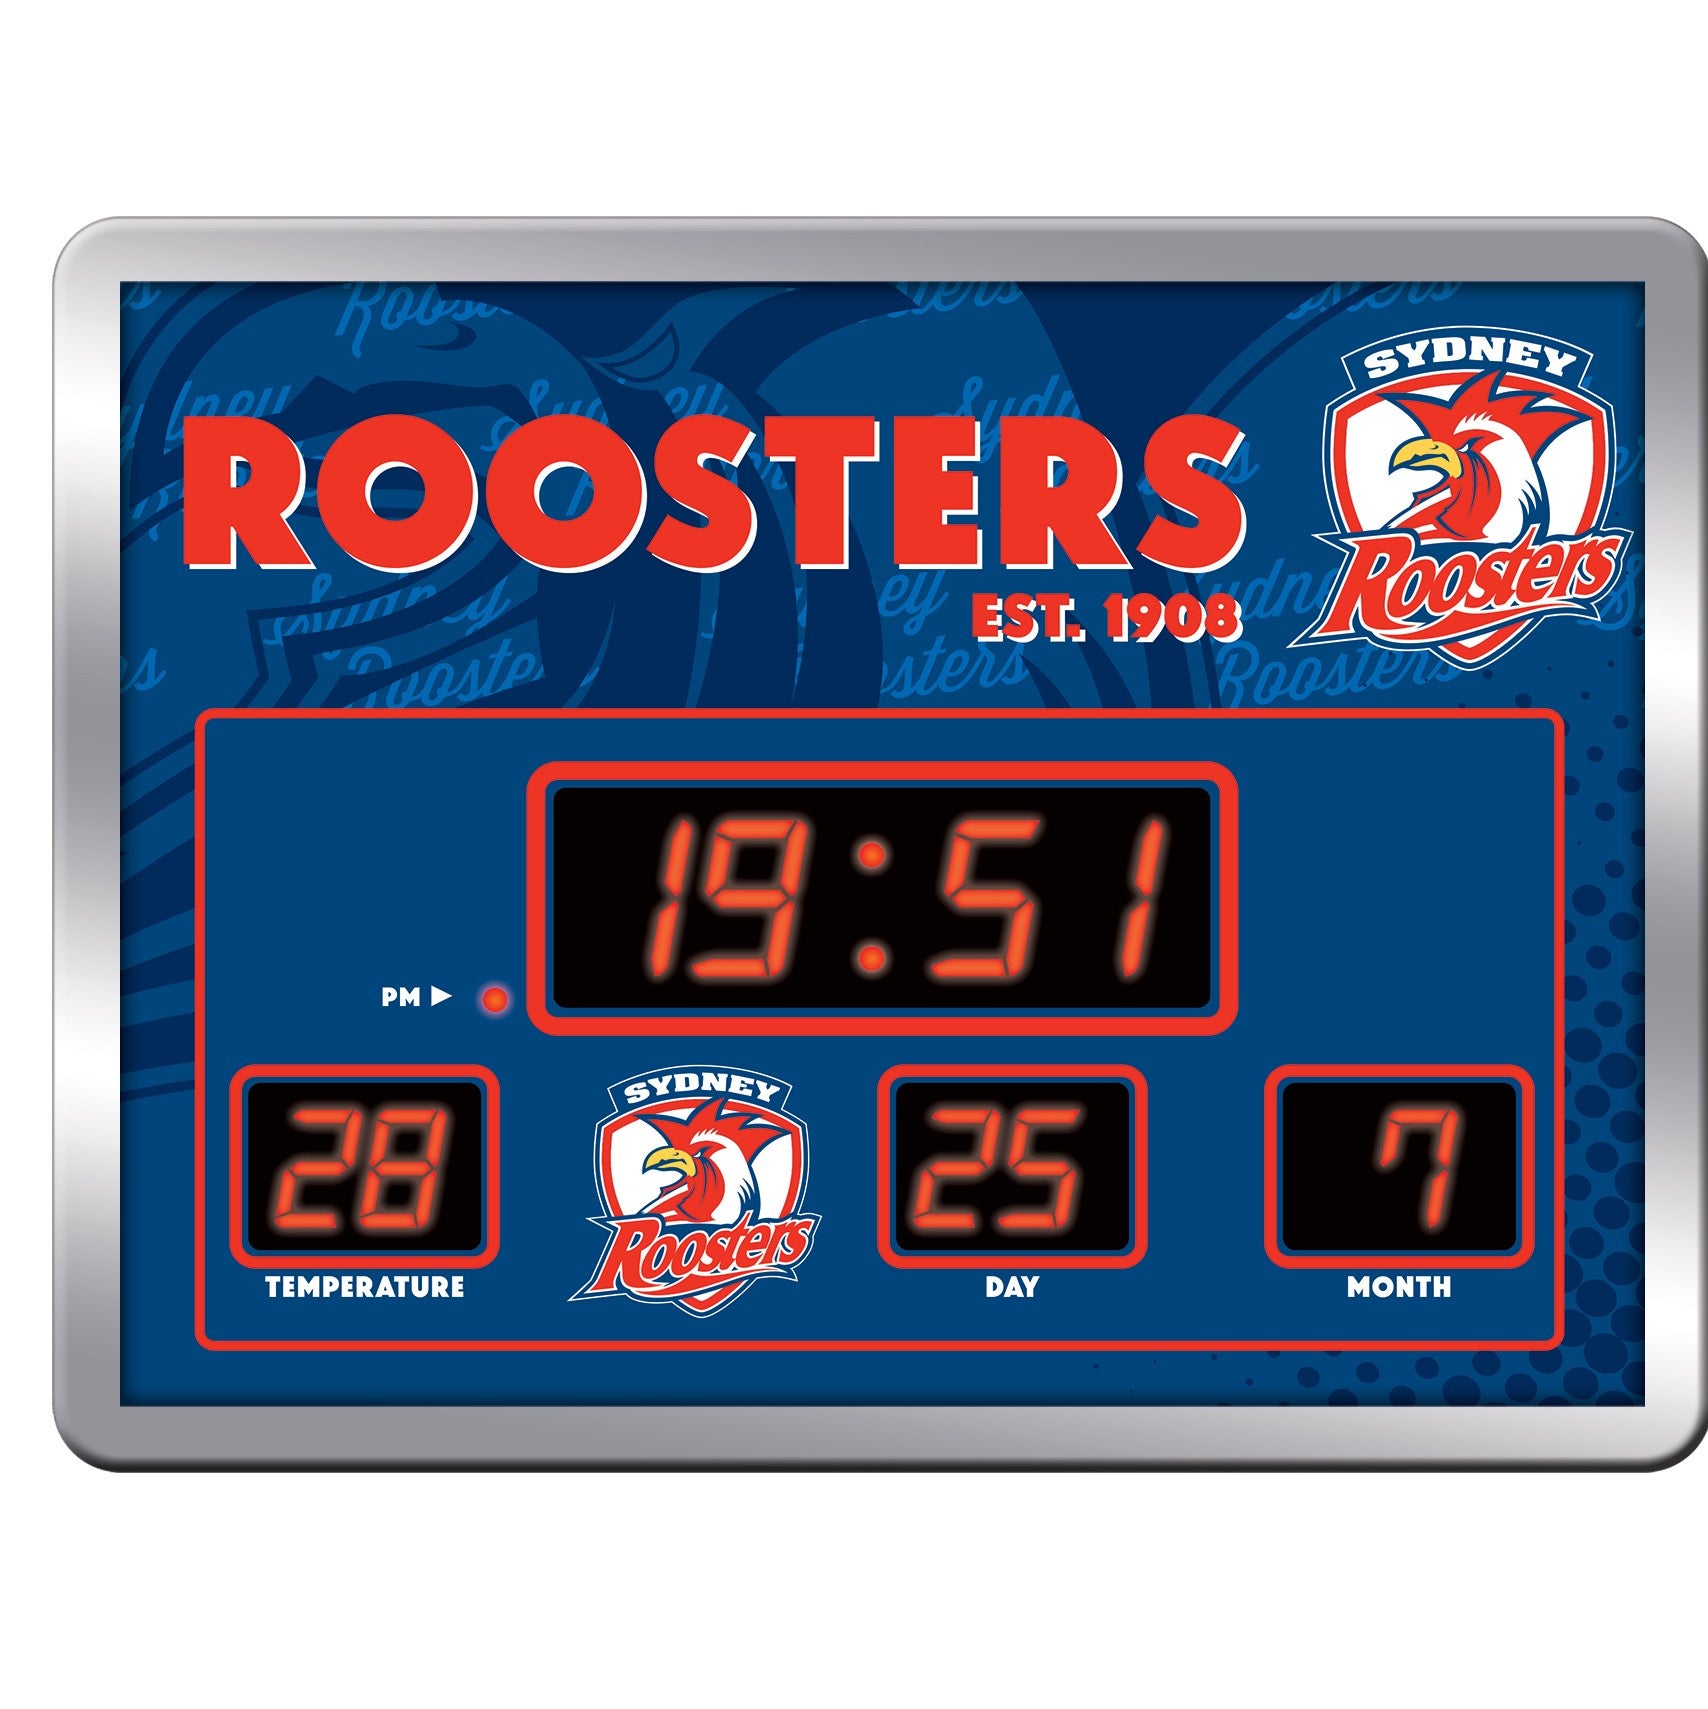 Sydney Roosters Scoreboard Clock